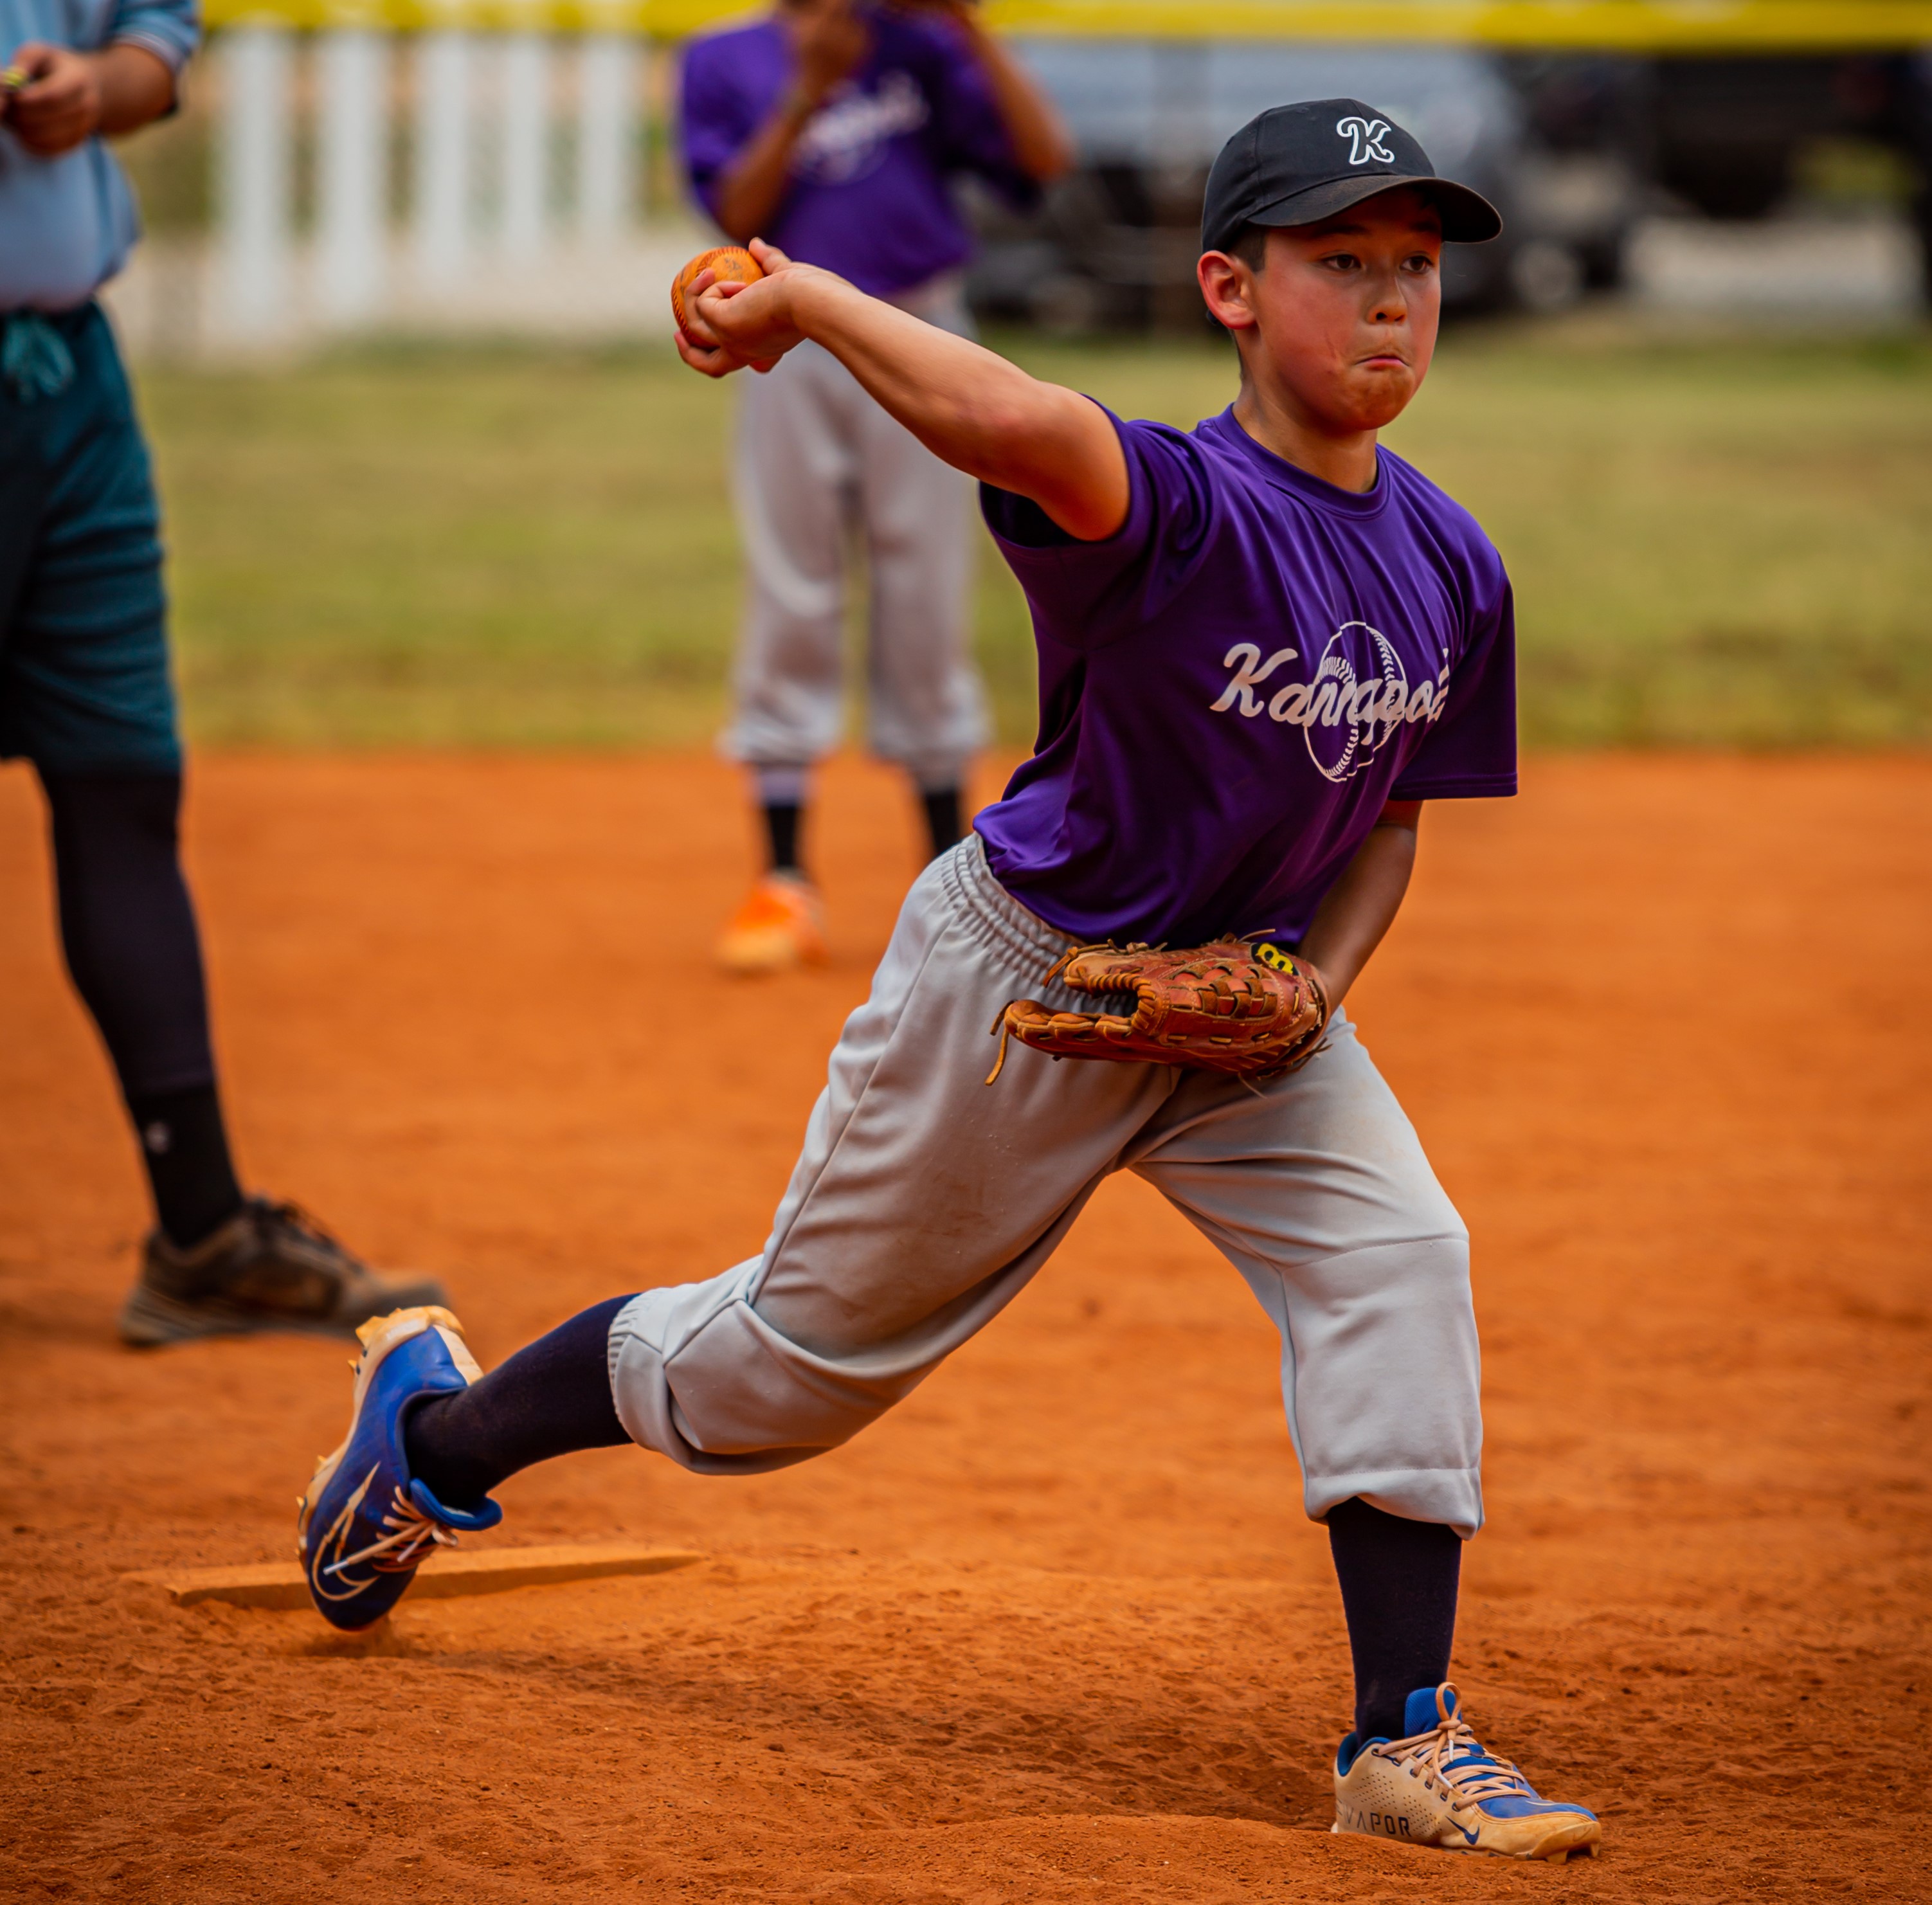 youth baseball pitcher